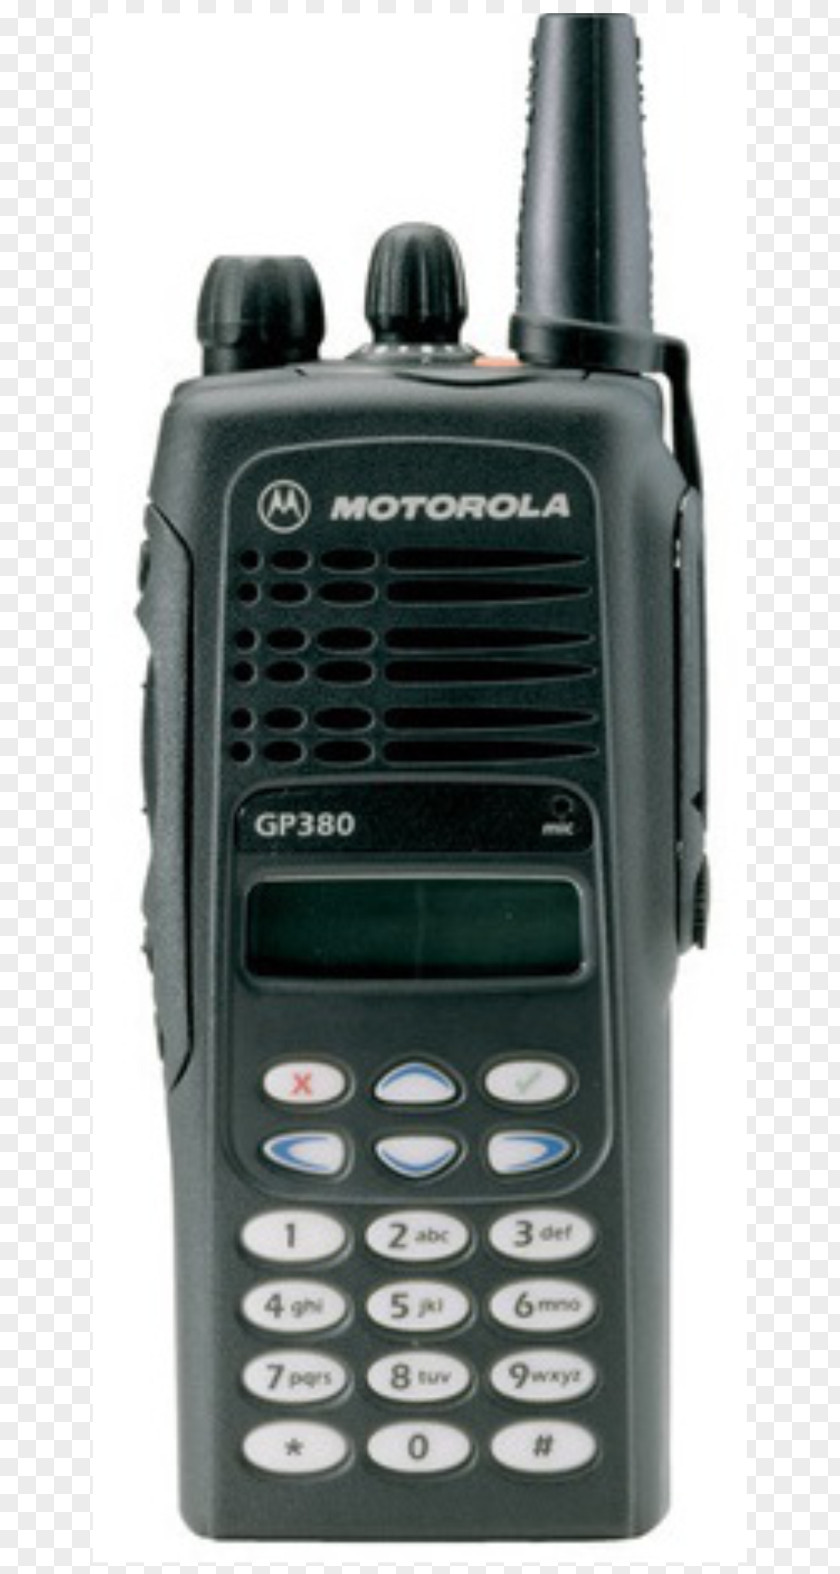 Microphone Motorola Handheld Two-Way Radios Mobile Phones PNG